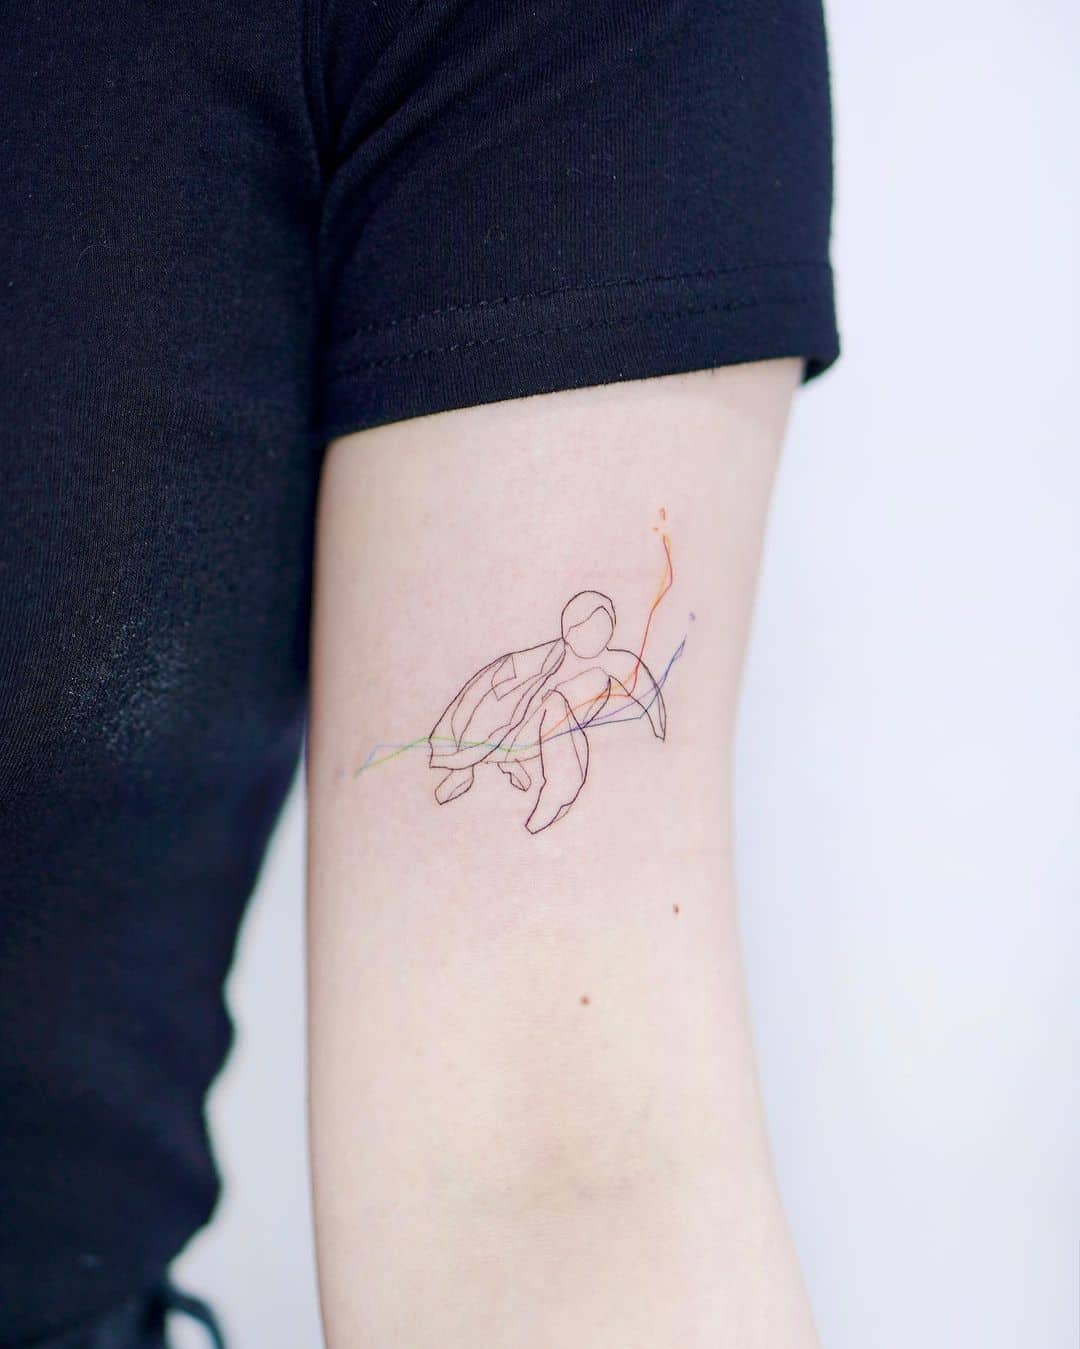 Turtle tattoo by imfine tat